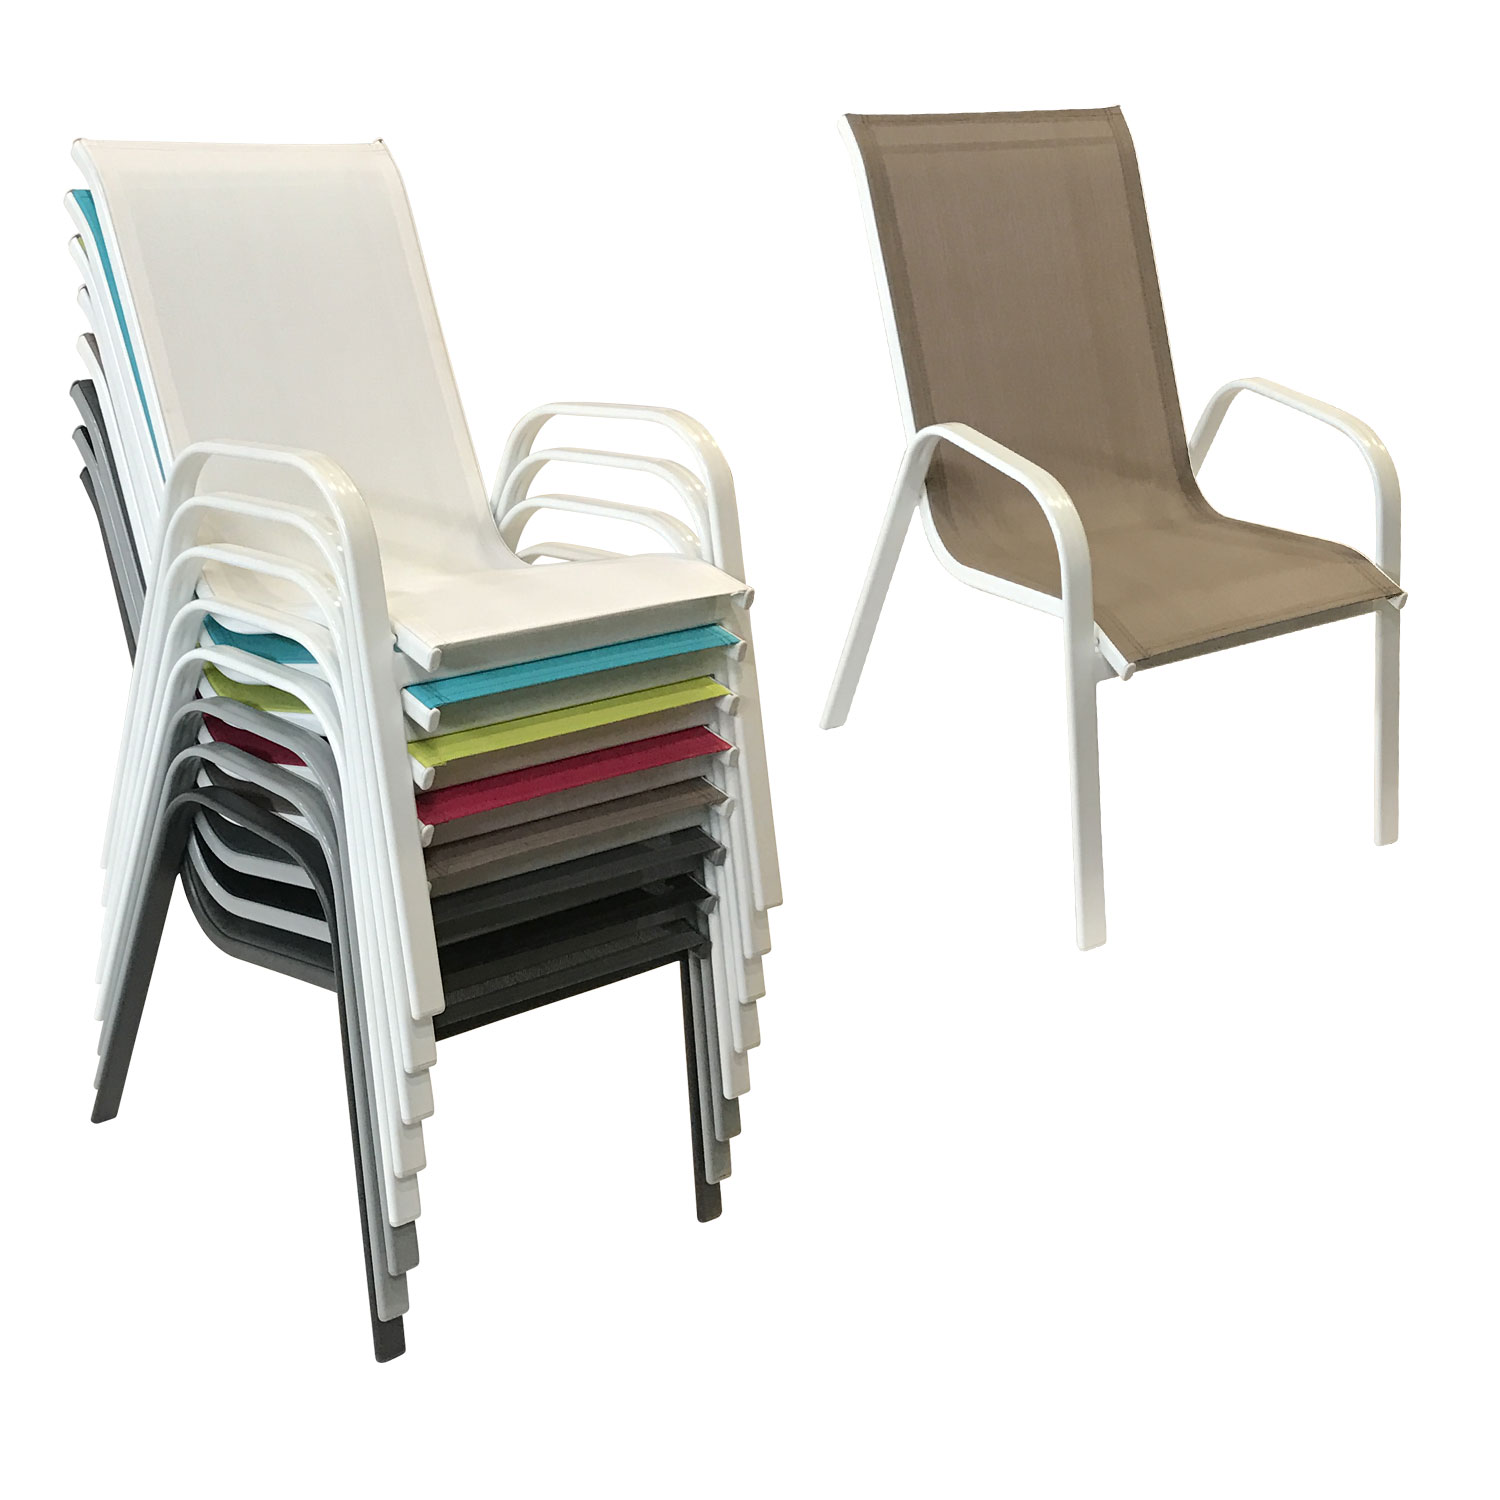 Satz von 8 Stühlen MARBELLA aus taupefarbenem Textilene - weißes Aluminium